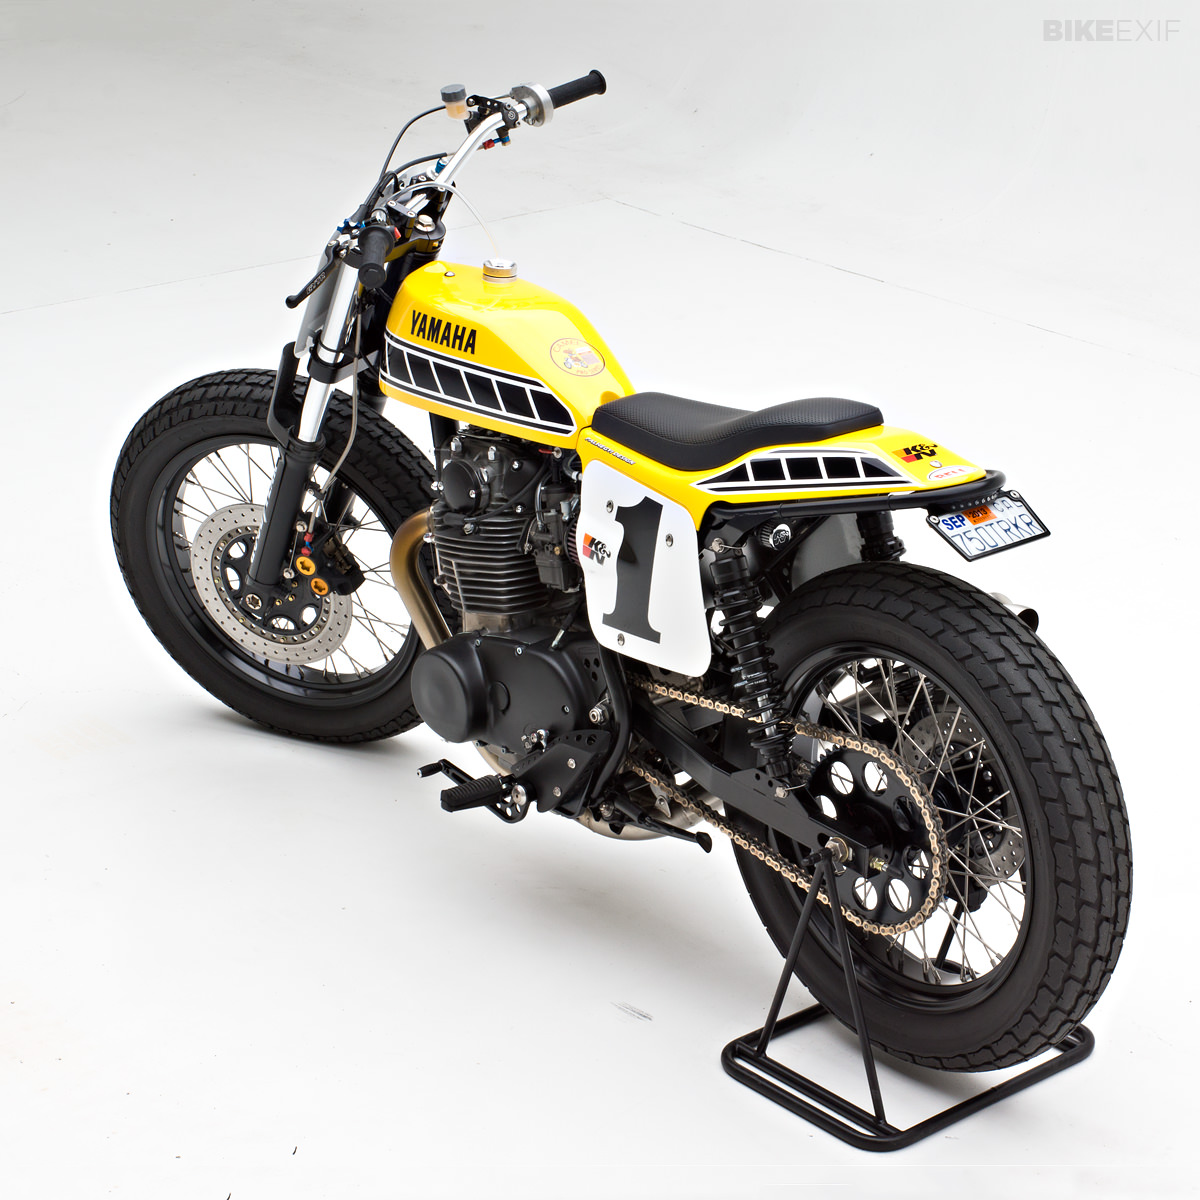 Yamaha Dirt Tracker By Jeff Palhegyi Bike Exif